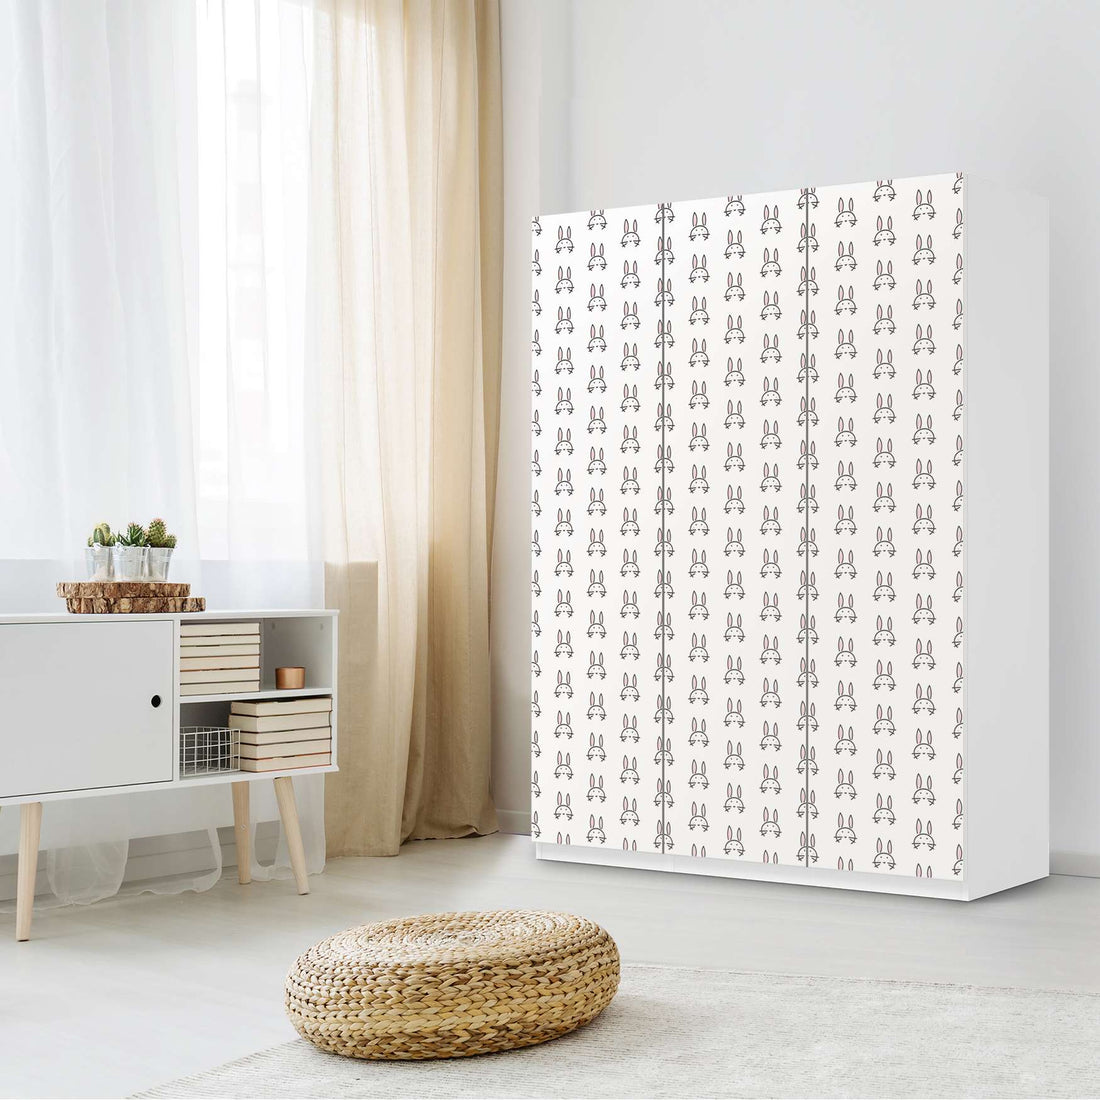 Folie für Möbel Hoppel - IKEA Pax Schrank 201 cm Höhe - 3 Türen - Kinderzimmer